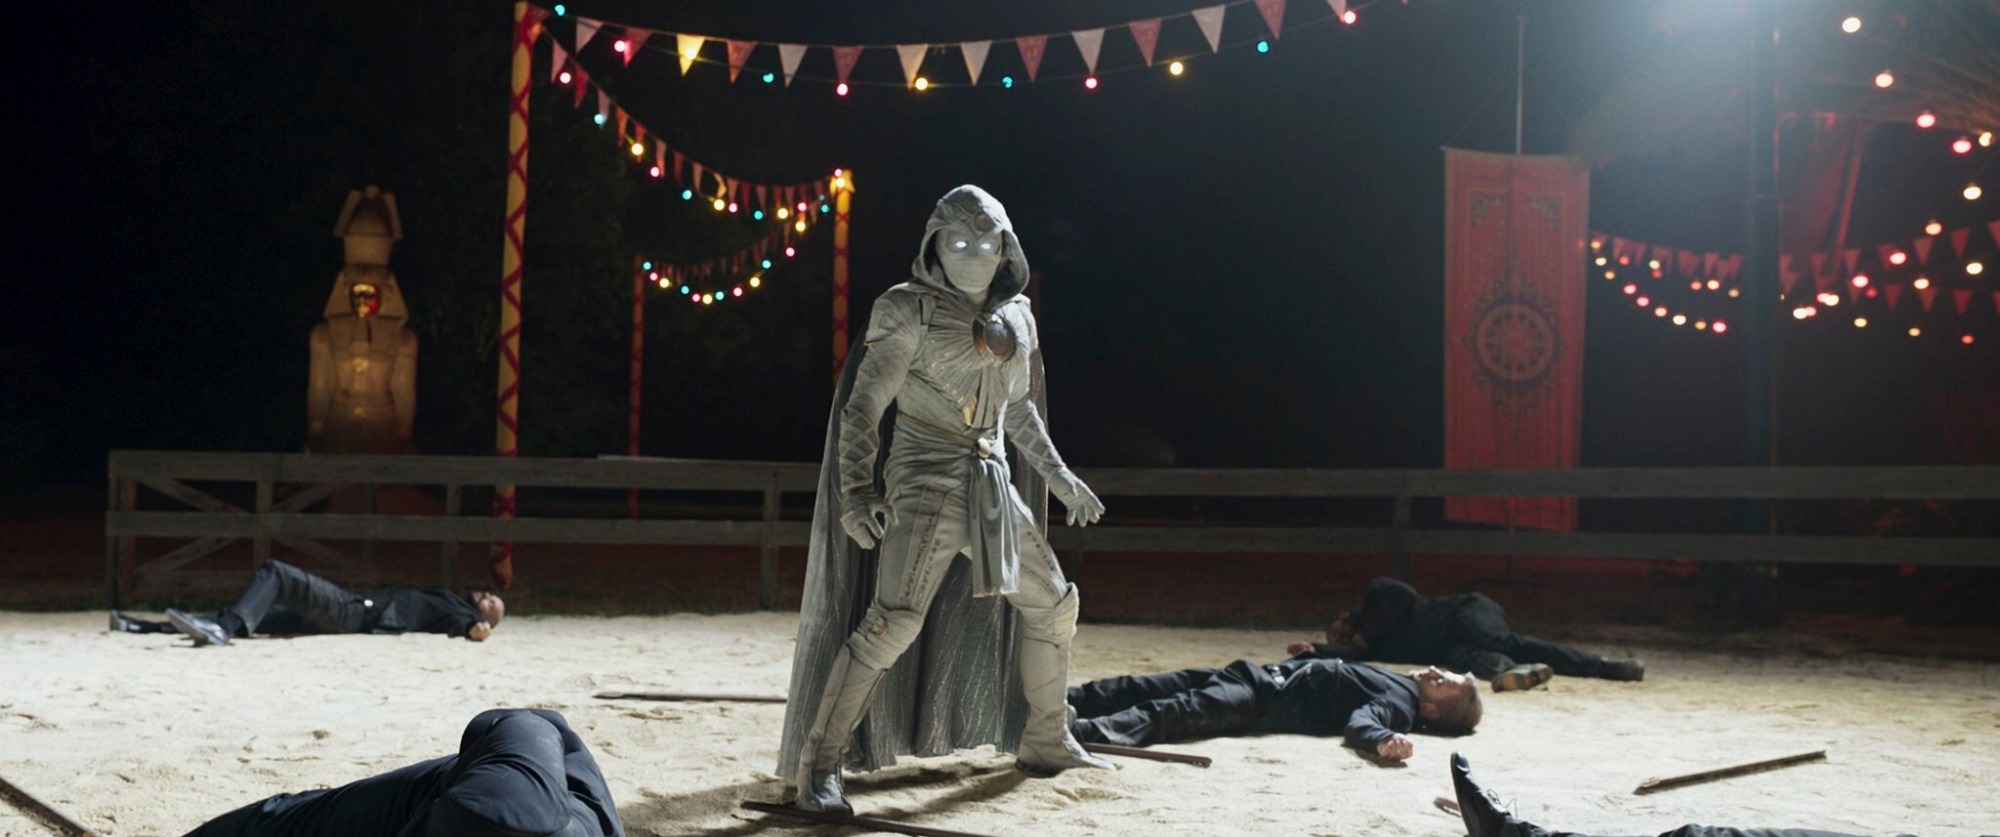 Психологическая драма или авантюрное приключение в Египте: стоит ли смотреть «Лунного рыцаря»?